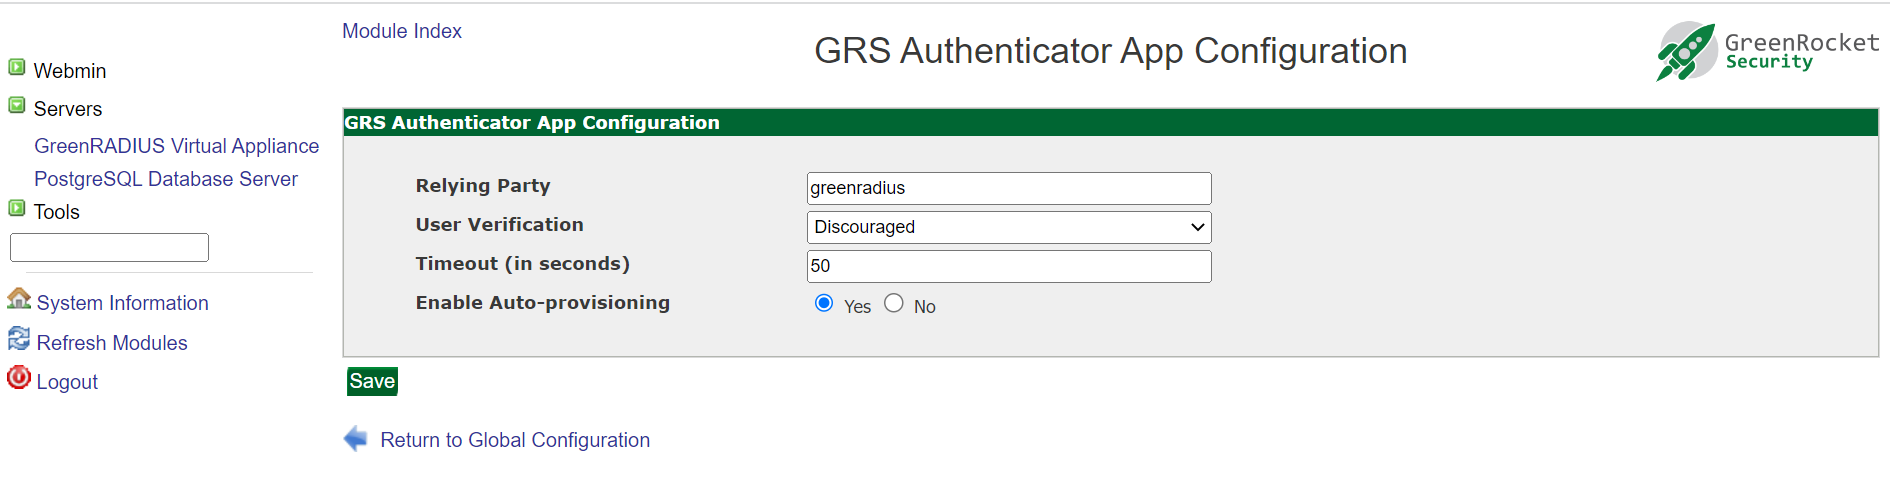 GRS Authentication app configuration